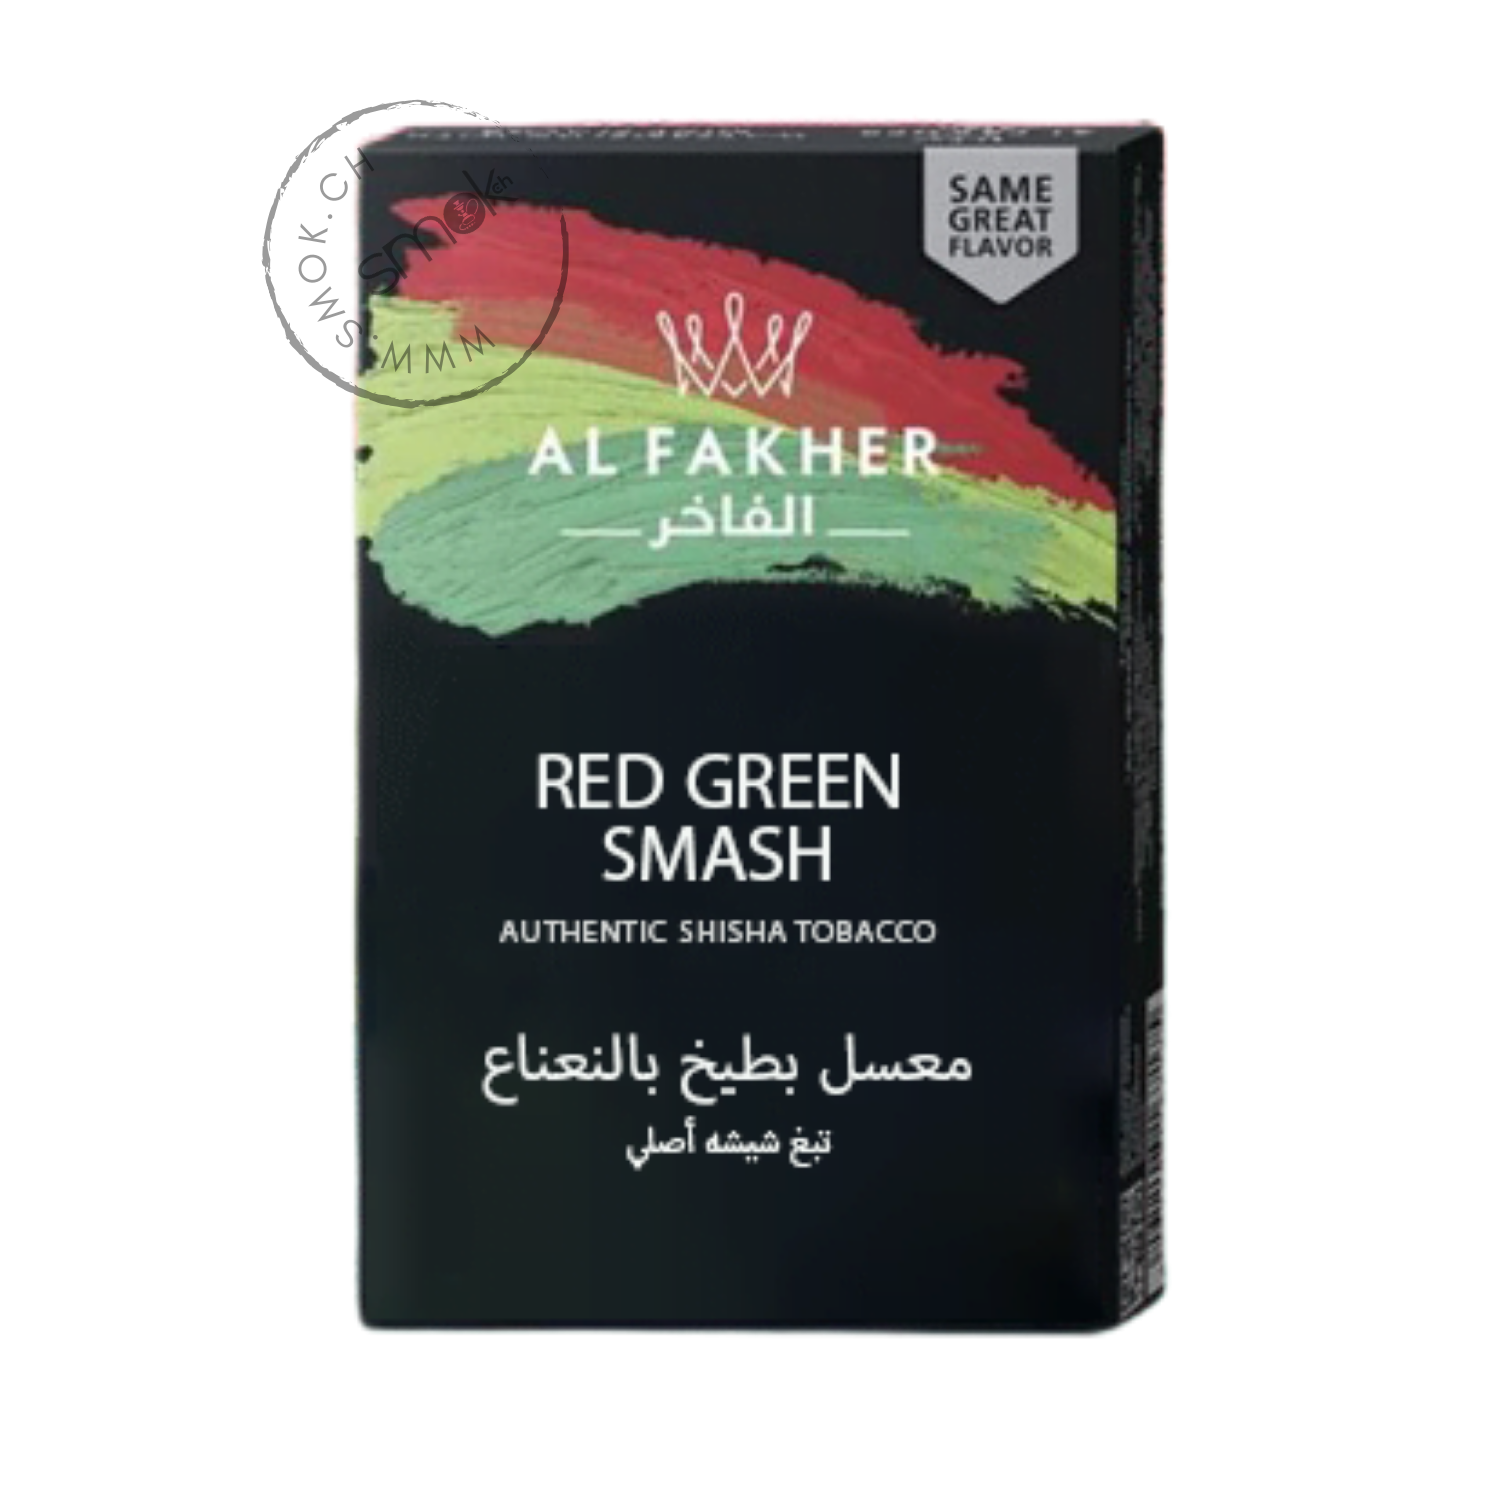 Red Green Smash (Pastèque, Menthe) 10x50g